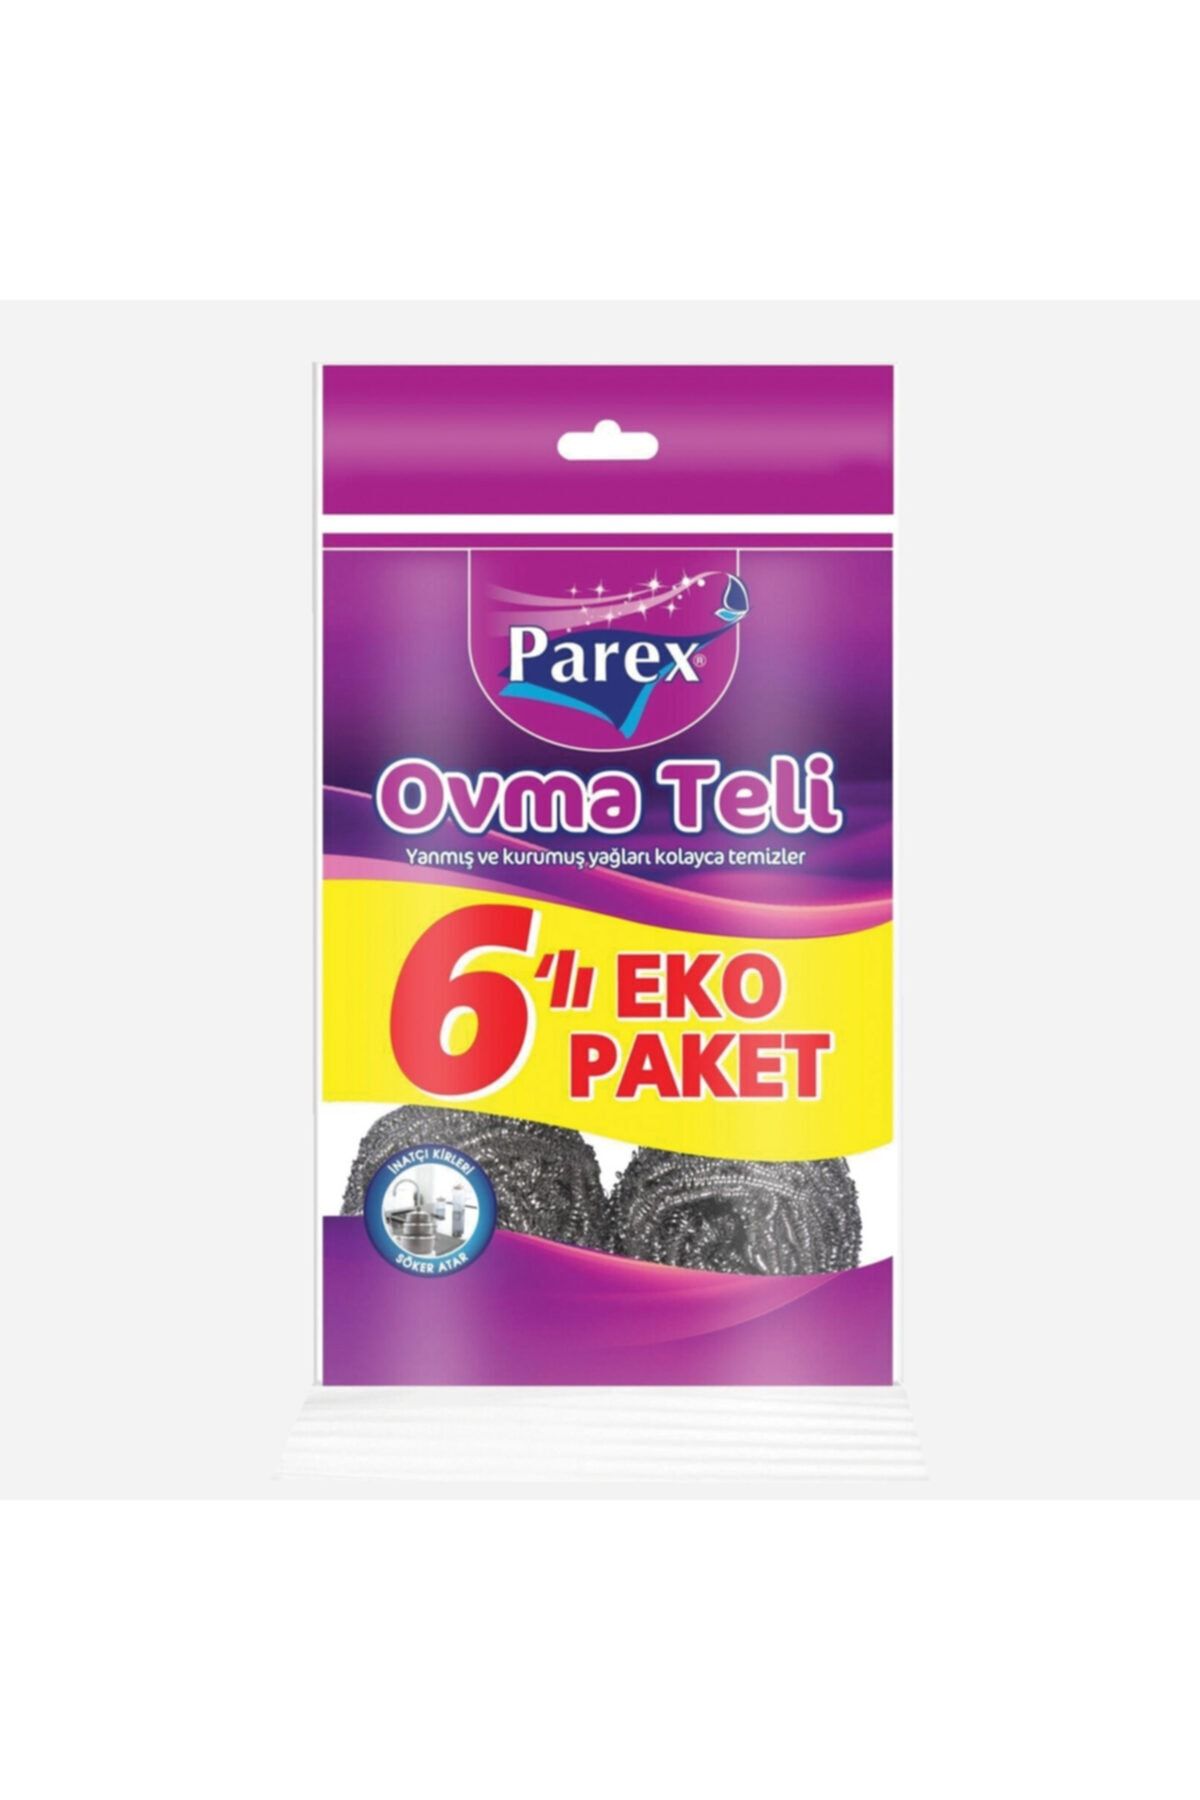 Parex Ovma Teli 6 Lı Eko Paket